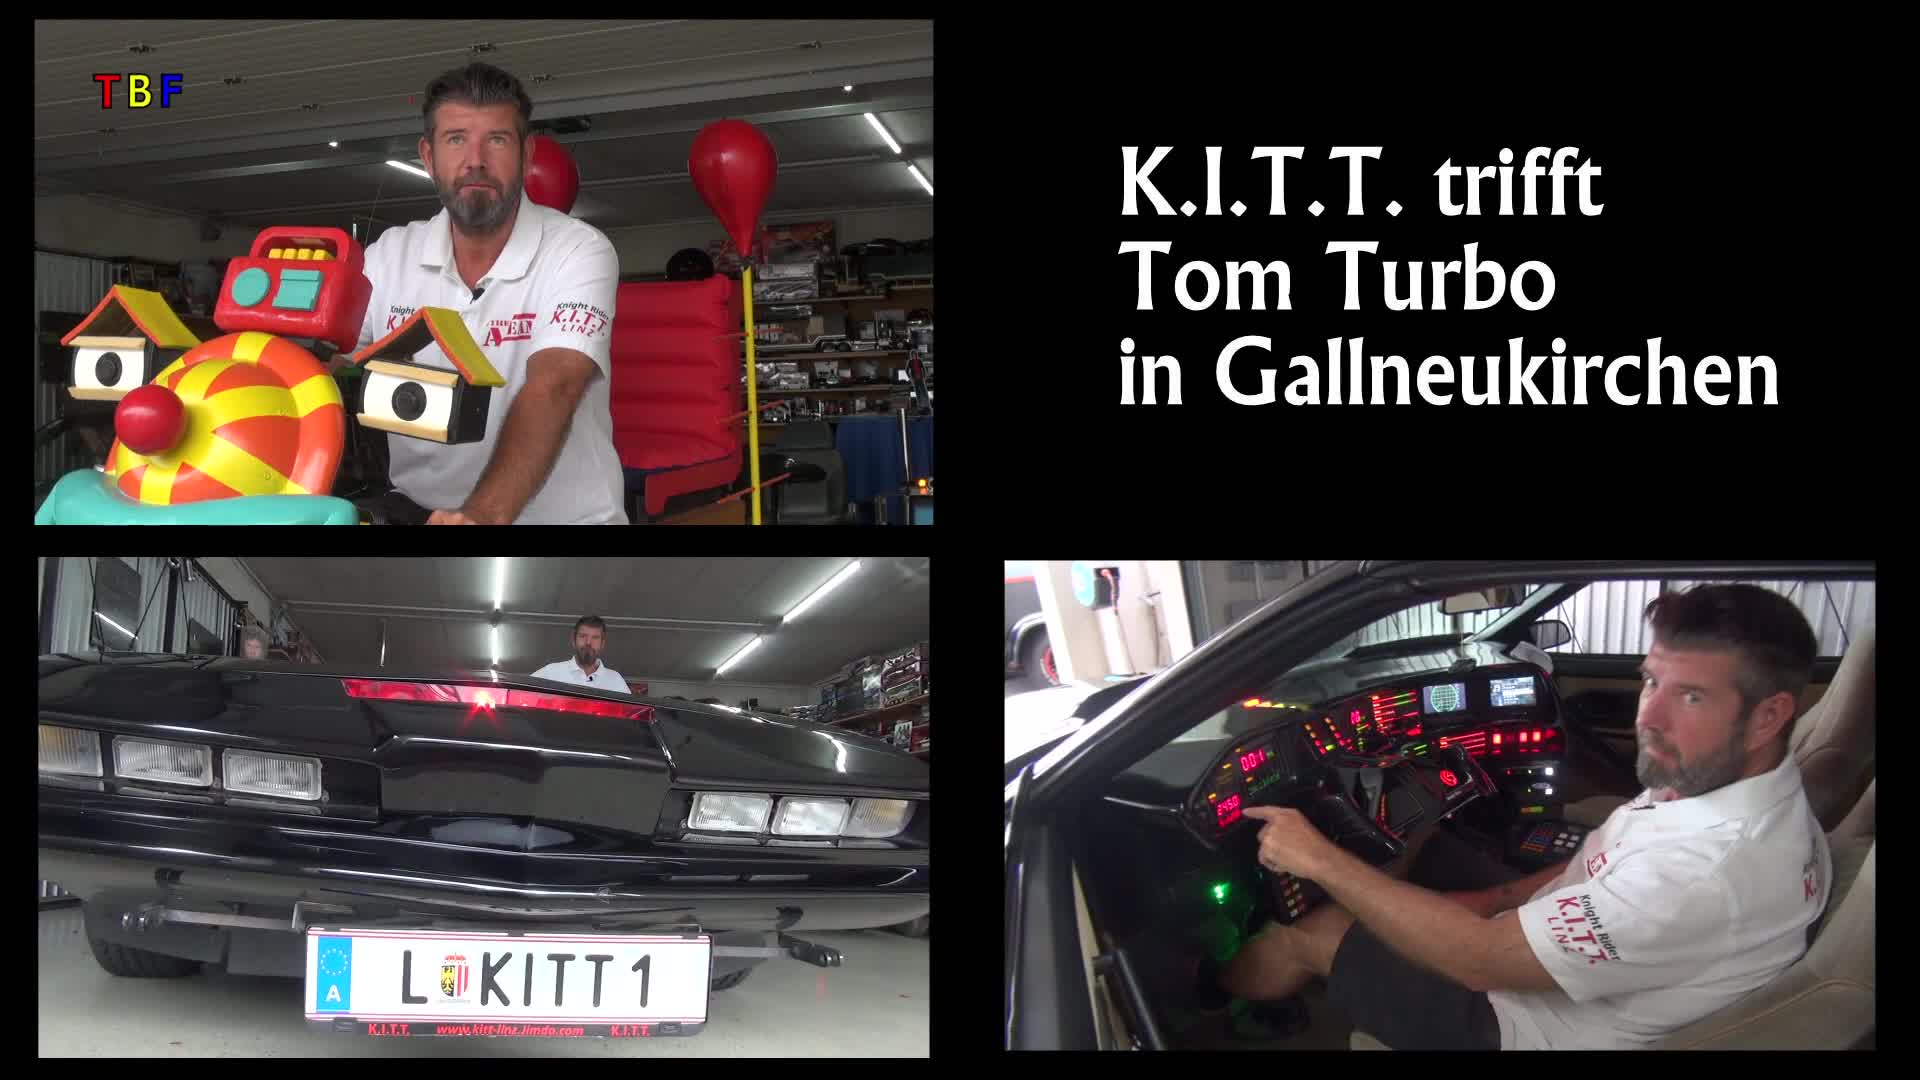 K.I.T.T. trifft Tom Turbo